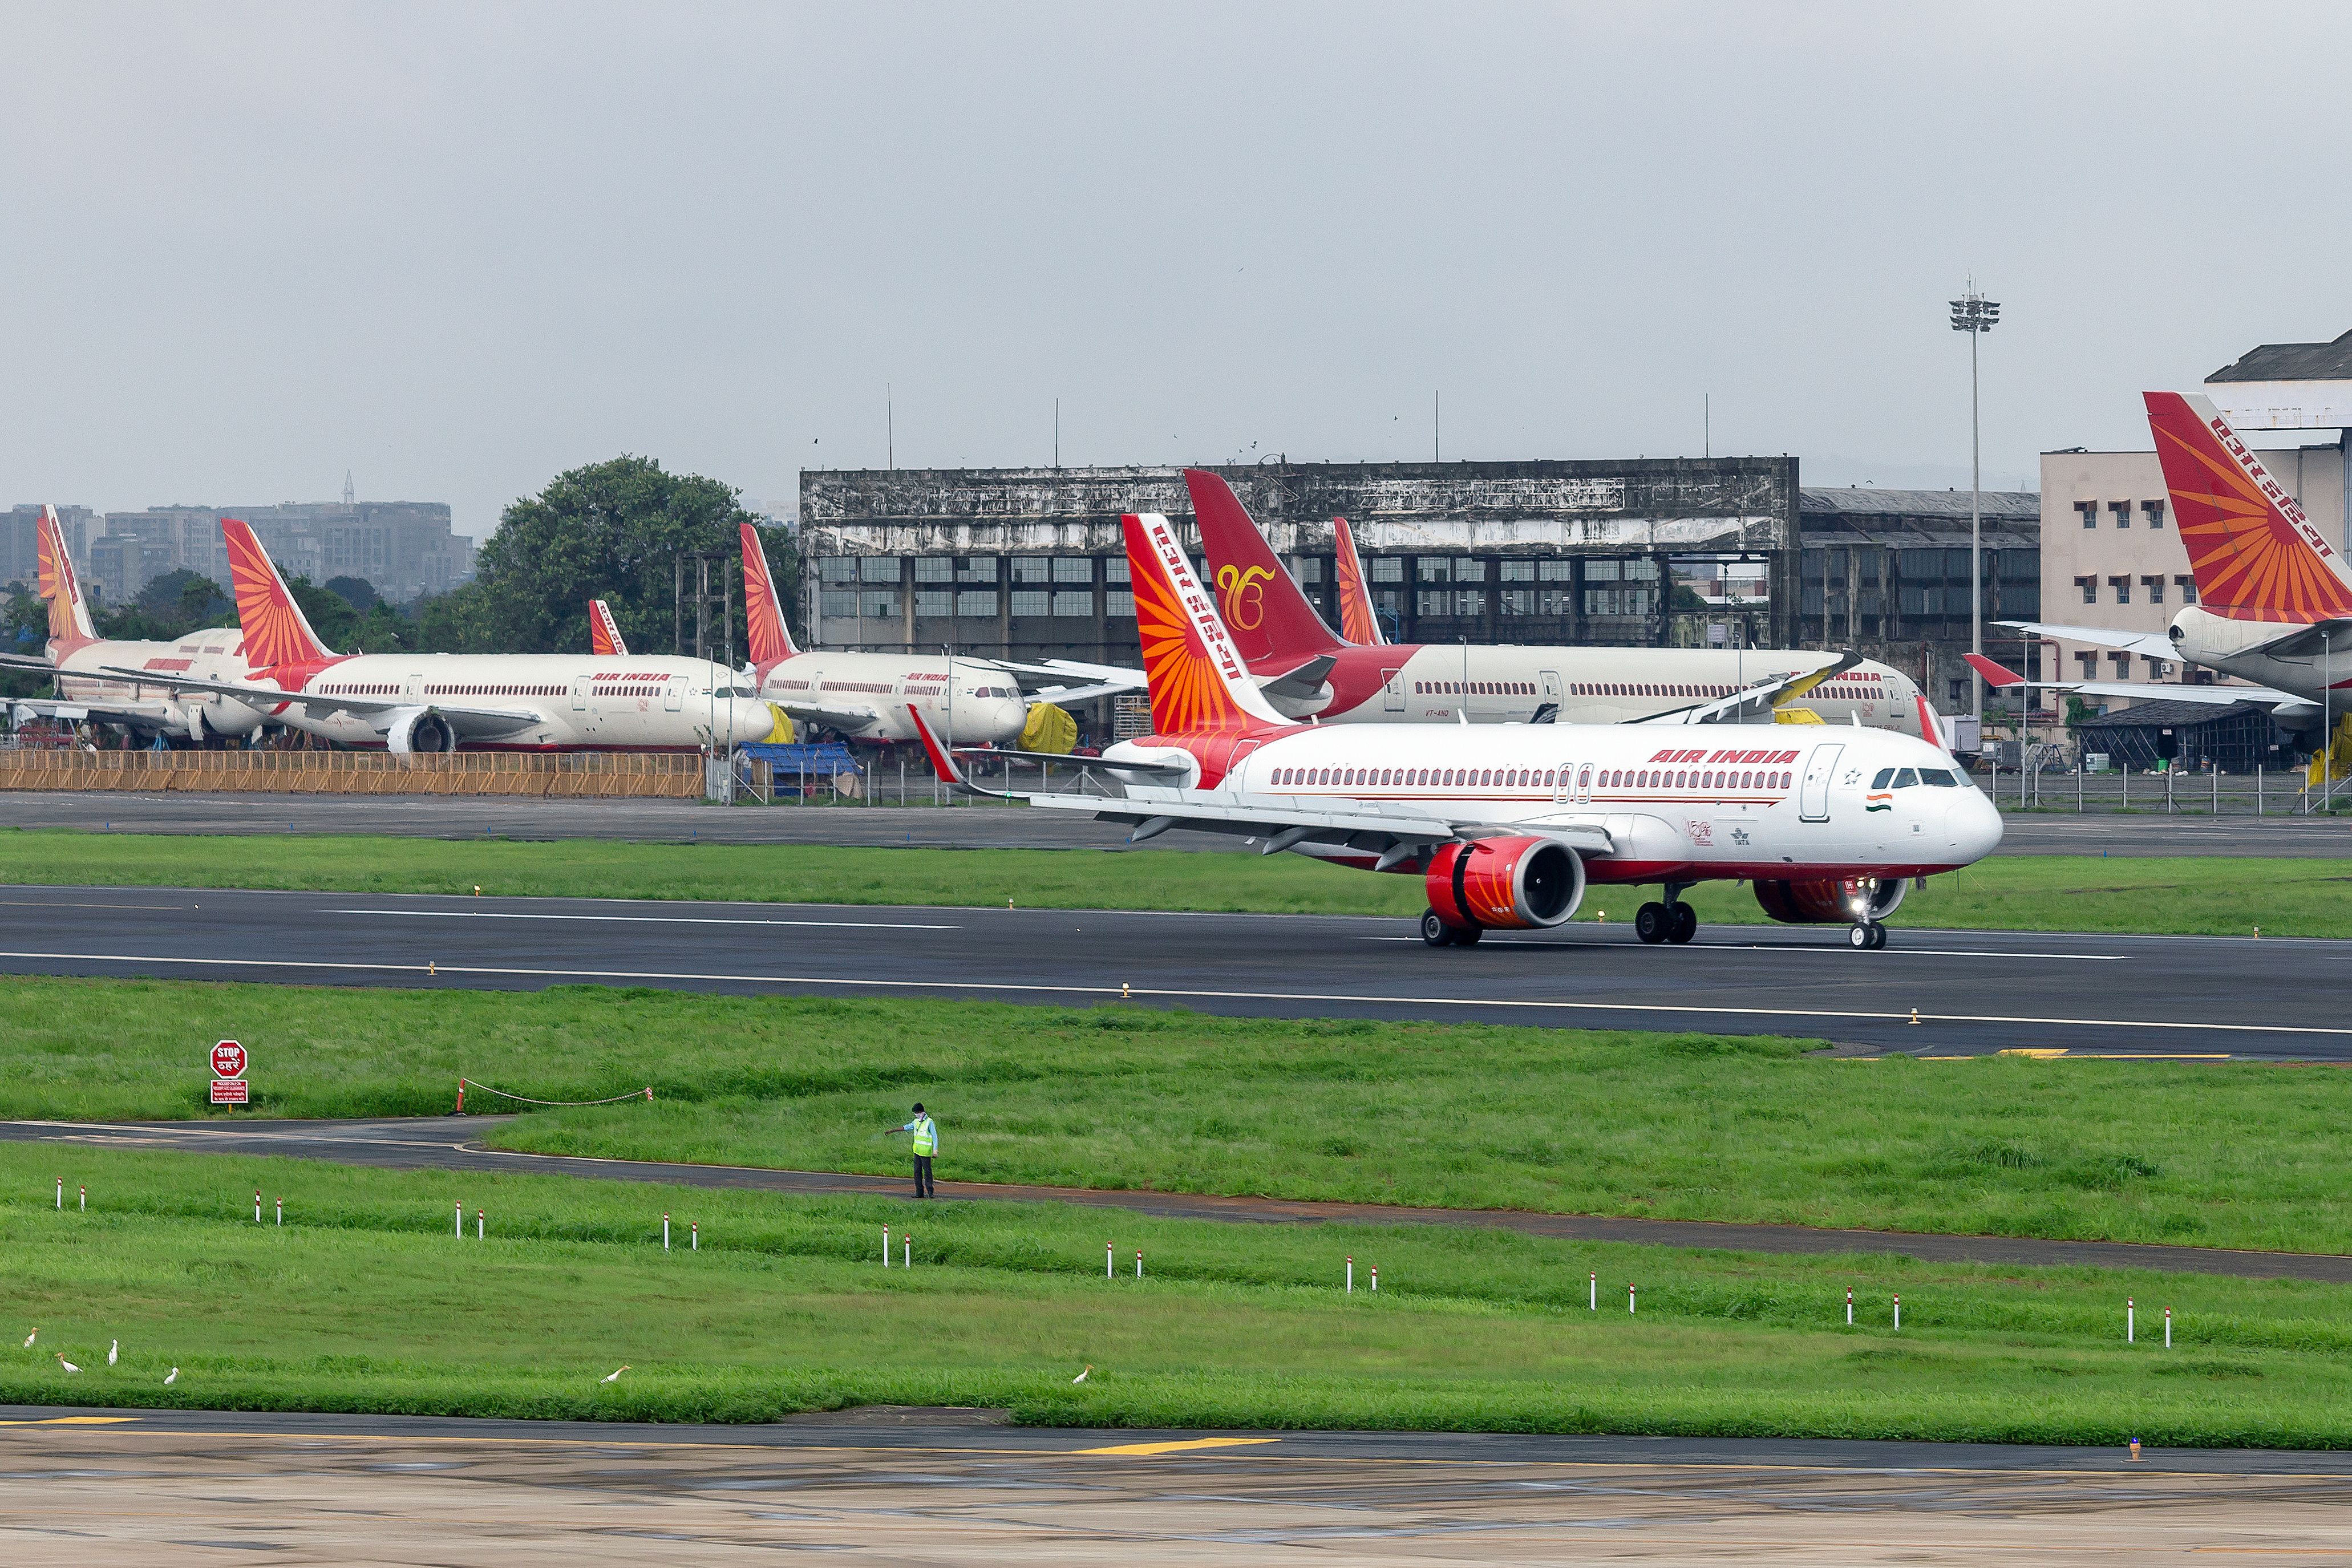 Air India Airbus A320neo landing at Chhatrapati Shivaji Maharaj International Airport.